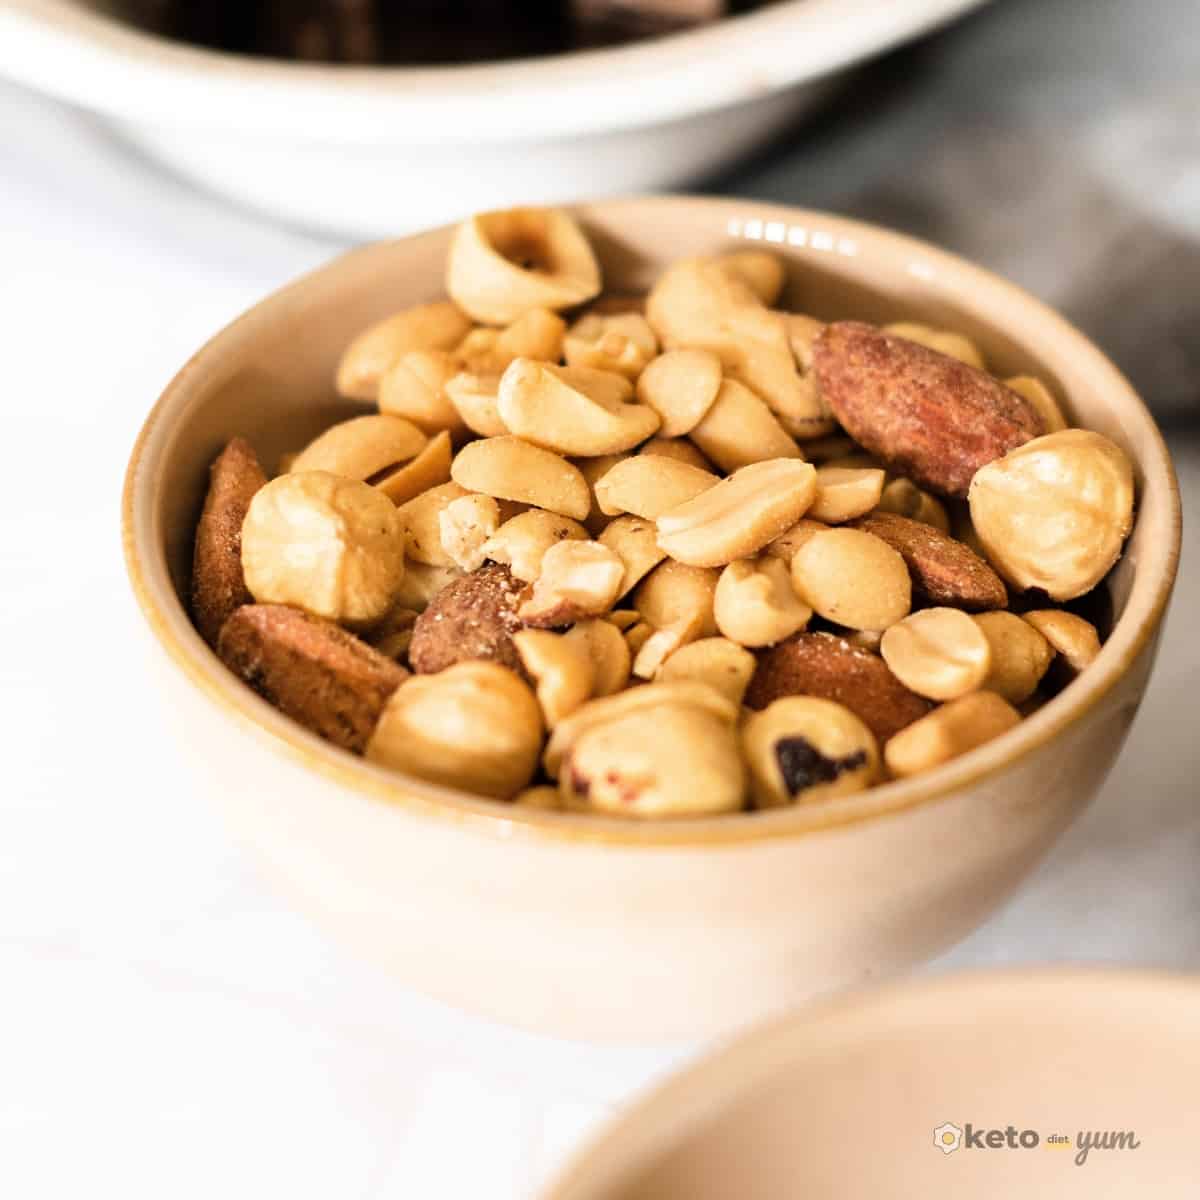 Bowl of mixed nuts to make keto chocolate bars